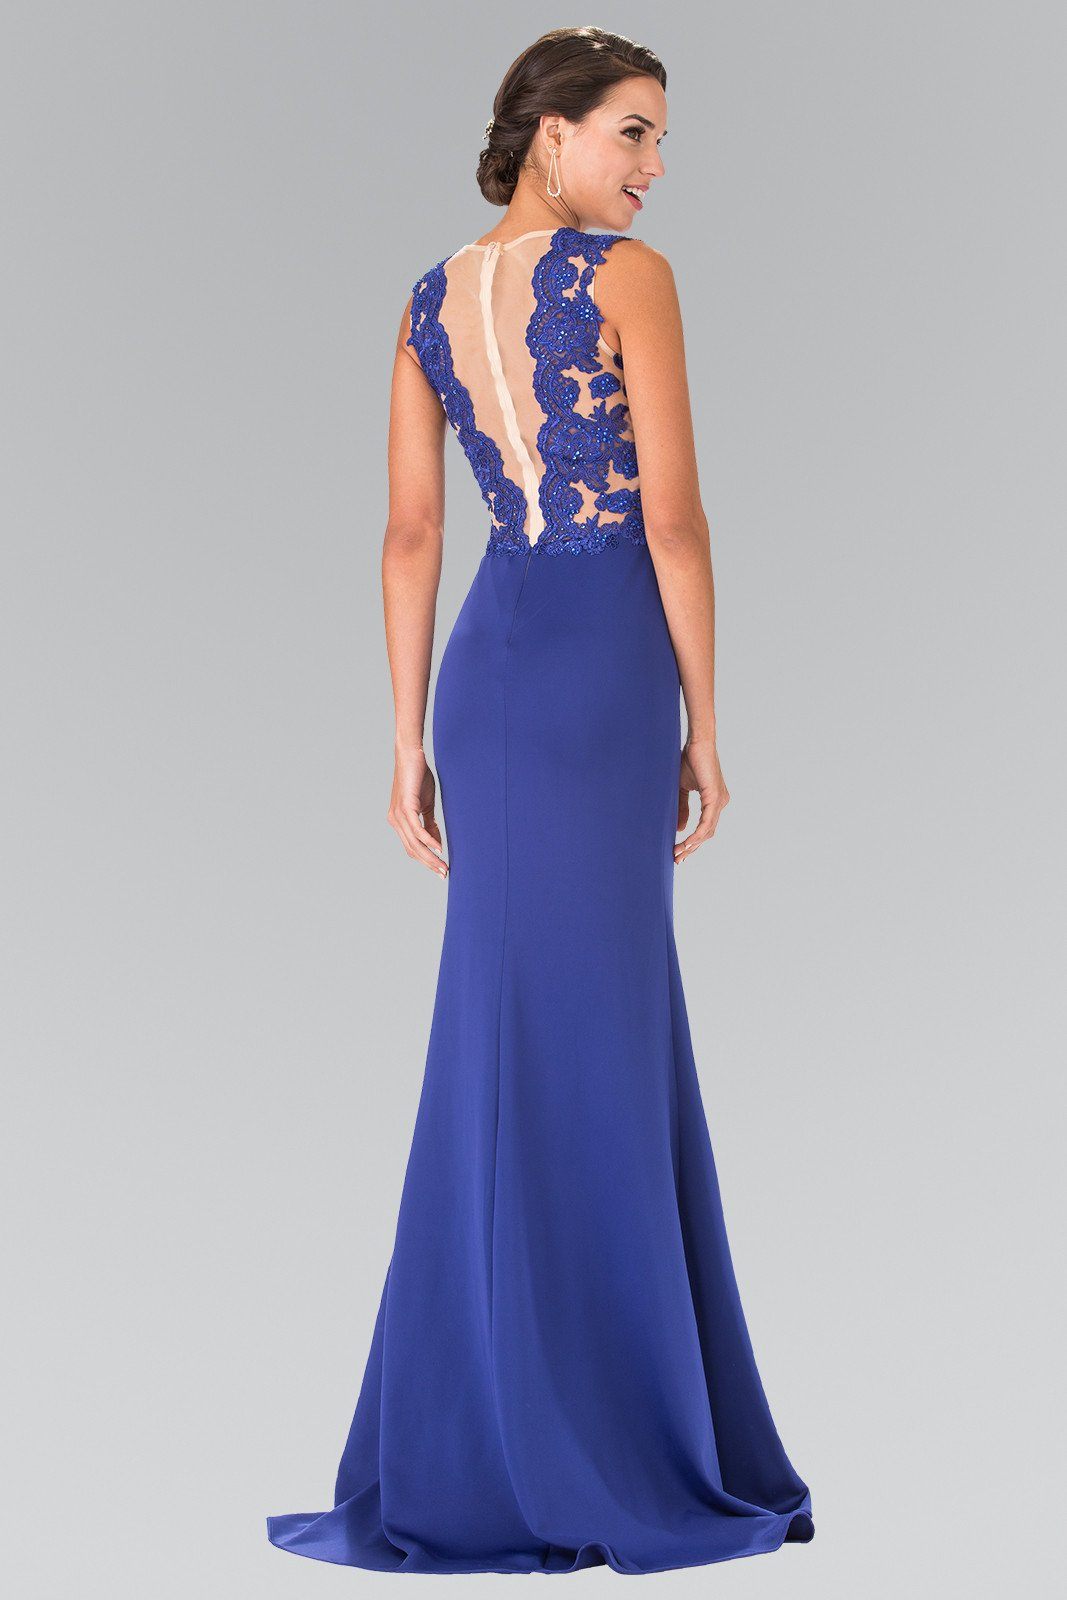 Long Sleeveless Lace Embellished Dress by Elizabeth K GL2286-Long Formal Dresses-ABC Fashion